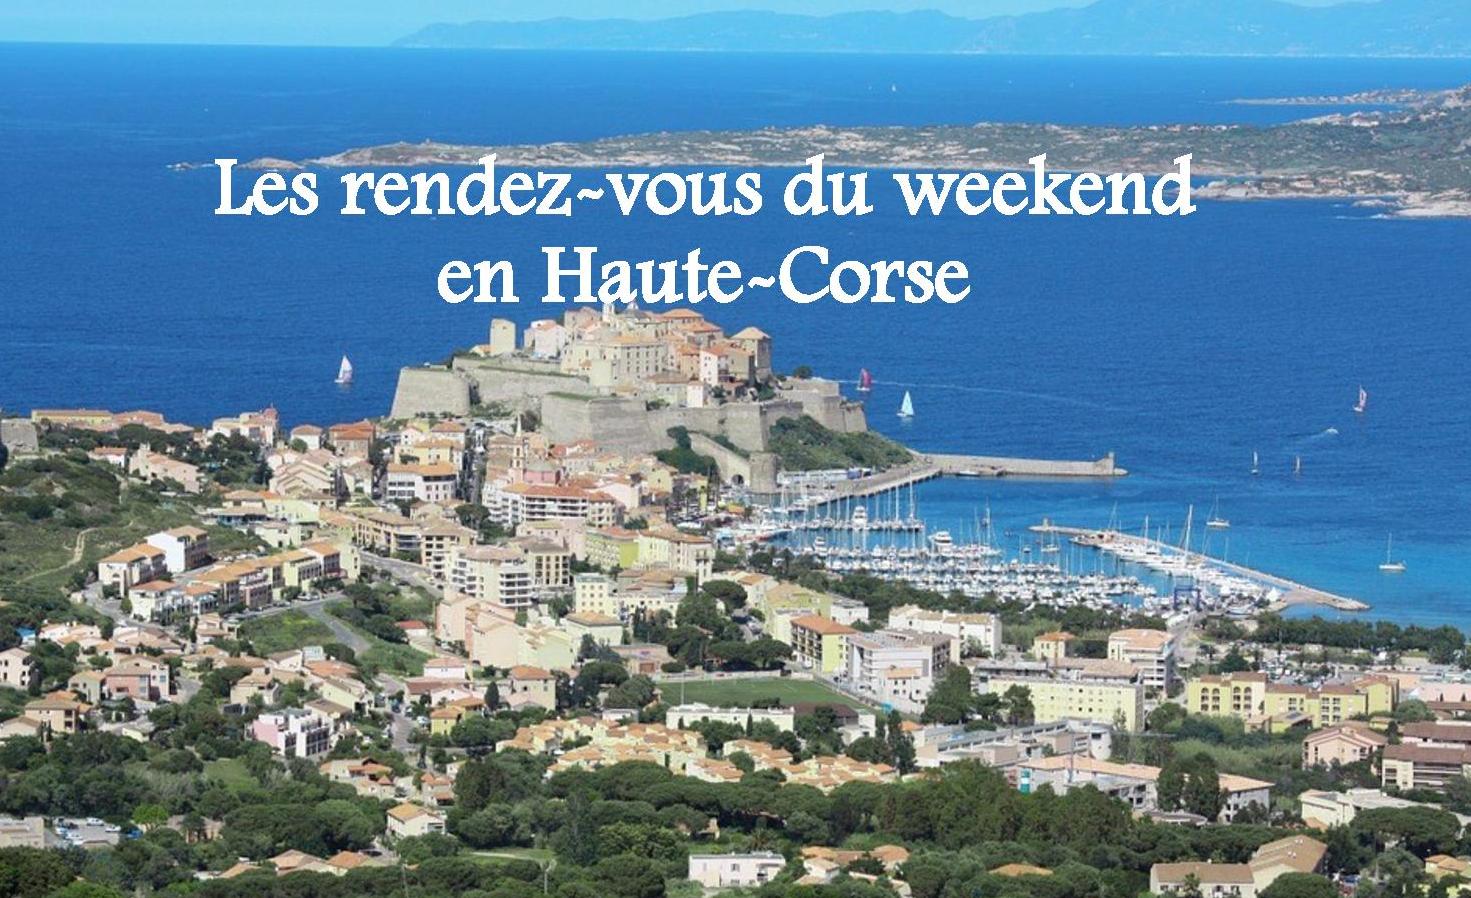 Les rendez-vous du weekend en Haute-Corse : Nos idées de sorties du 15 au 17 juin 2018